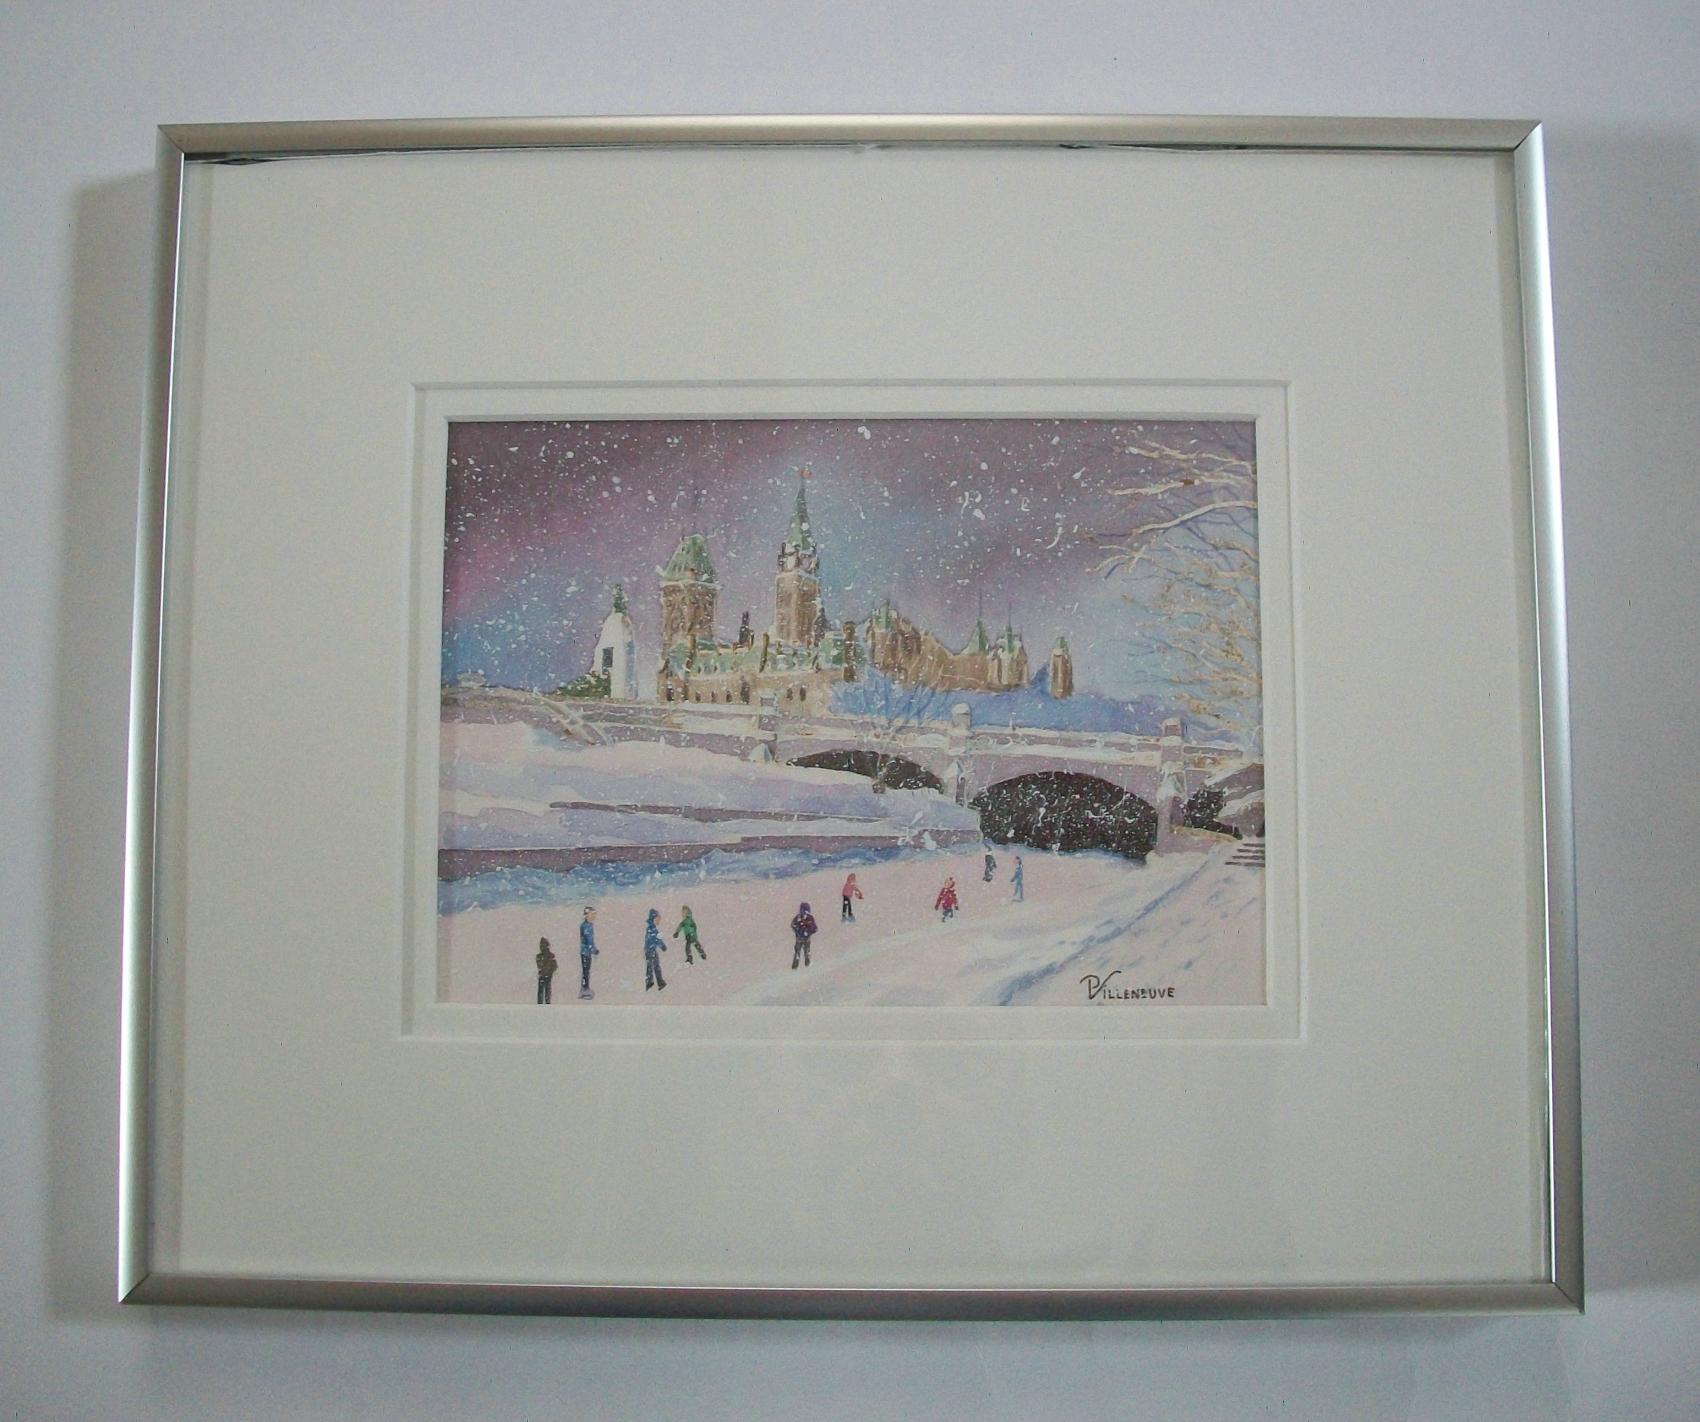 Canadian P. VILLENEUVE - 'Les Patineurs' - Framed Watercolor Painting - Canada - C.1993 For Sale